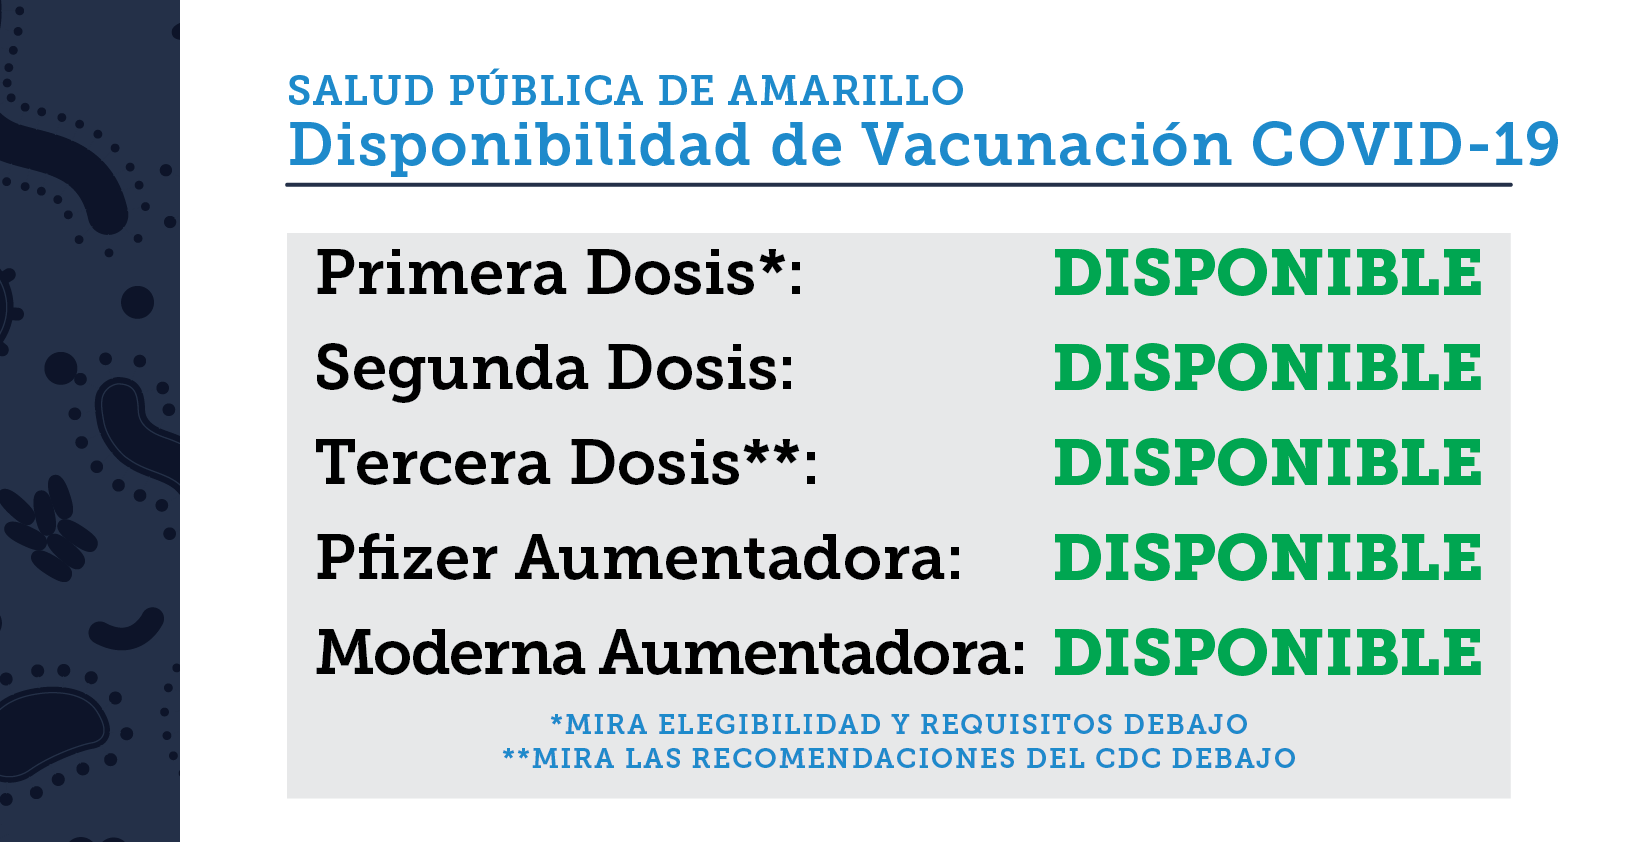 COVID-19 Vaccine (Spanish) — Amarillo Covid-19 Response